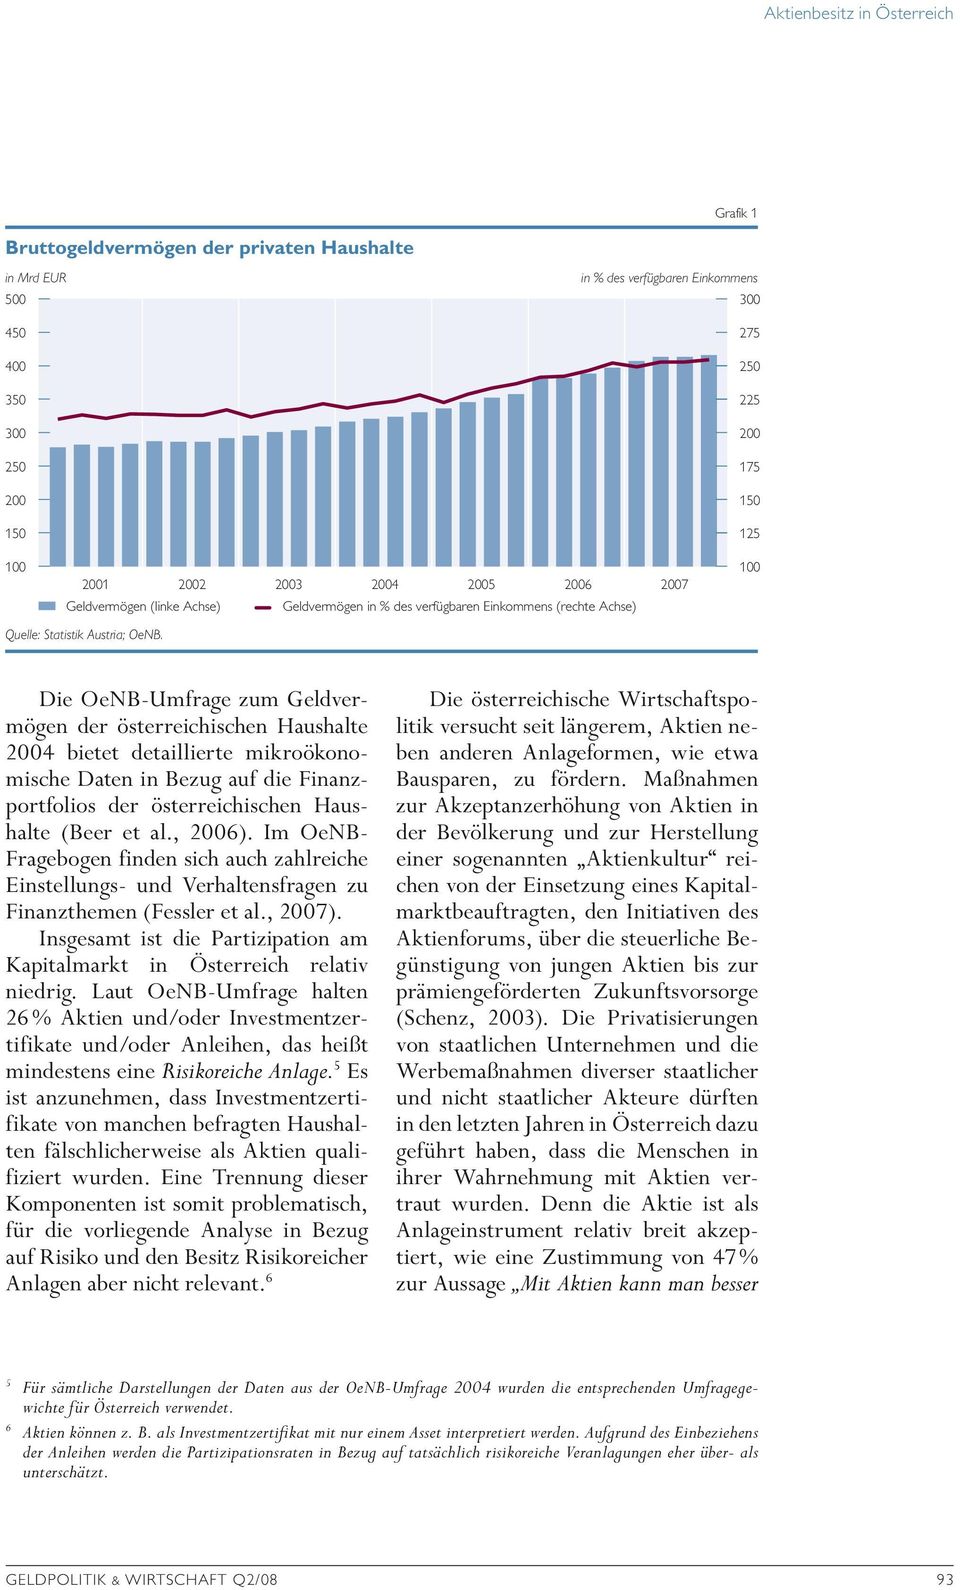 Die OeNB-Umfrage zum Geldvermögen der österreichischen Haushalte 2004 bietet detaillierte mikroökonomische Daten in Bezug auf die Finanzportfolios der österreichischen Haushalte (Beer et al., 2006).